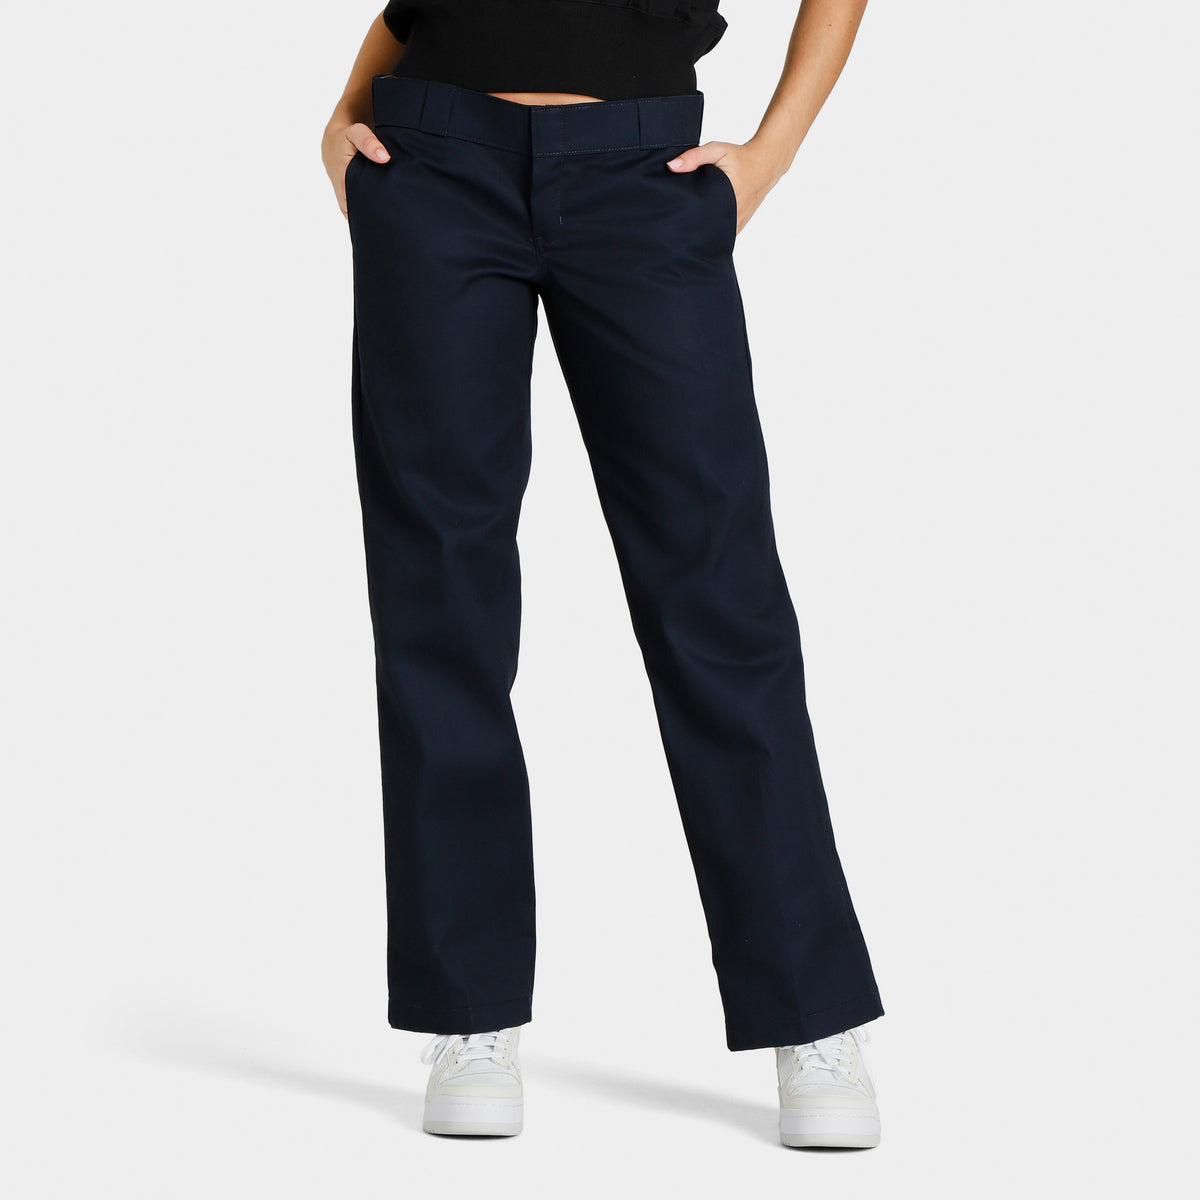 Women's 774 Dickies Original Fit Work Pants Black Size 6 Petite for